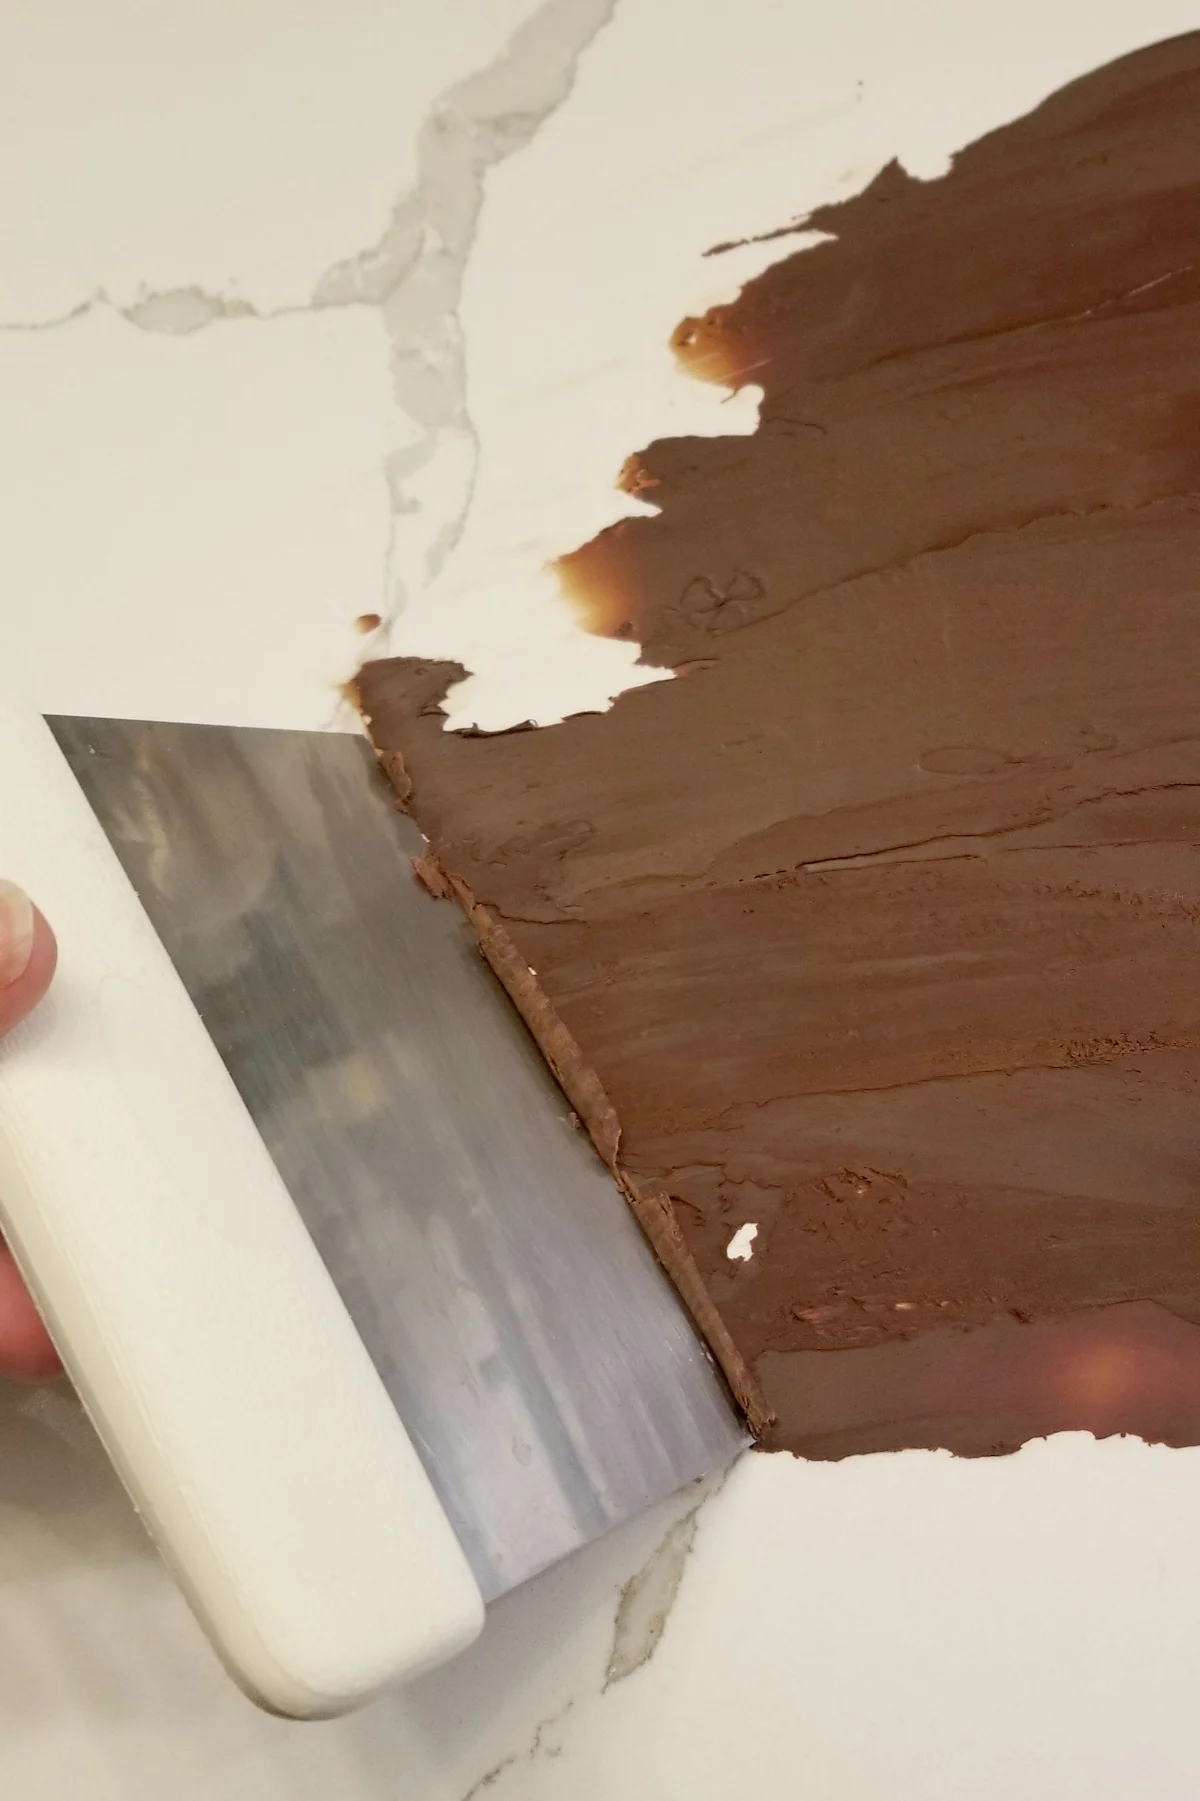 a dough scraper scraping chocolate into curls